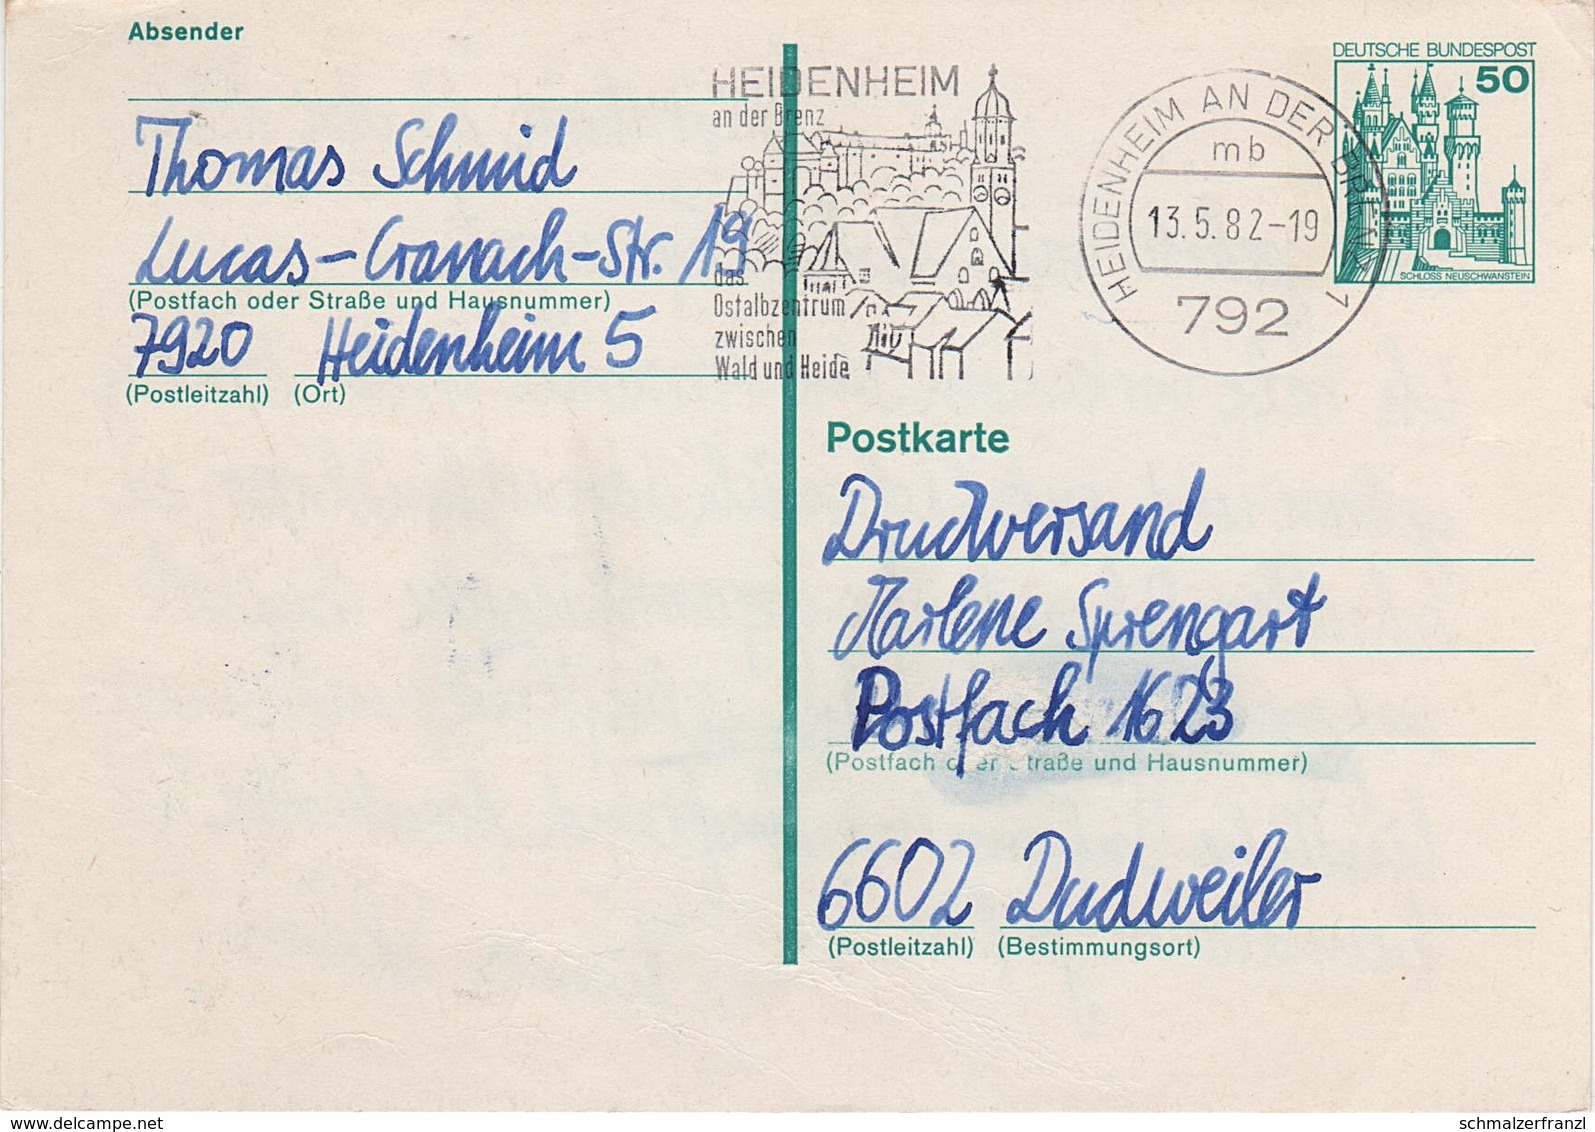 Postkarte Ganzsache BRD Deutschland Bundespost Deutsche Post Briefmarke 50 Pfennig Neuschwanstein Stempel Heidenheim - Postcards - Used